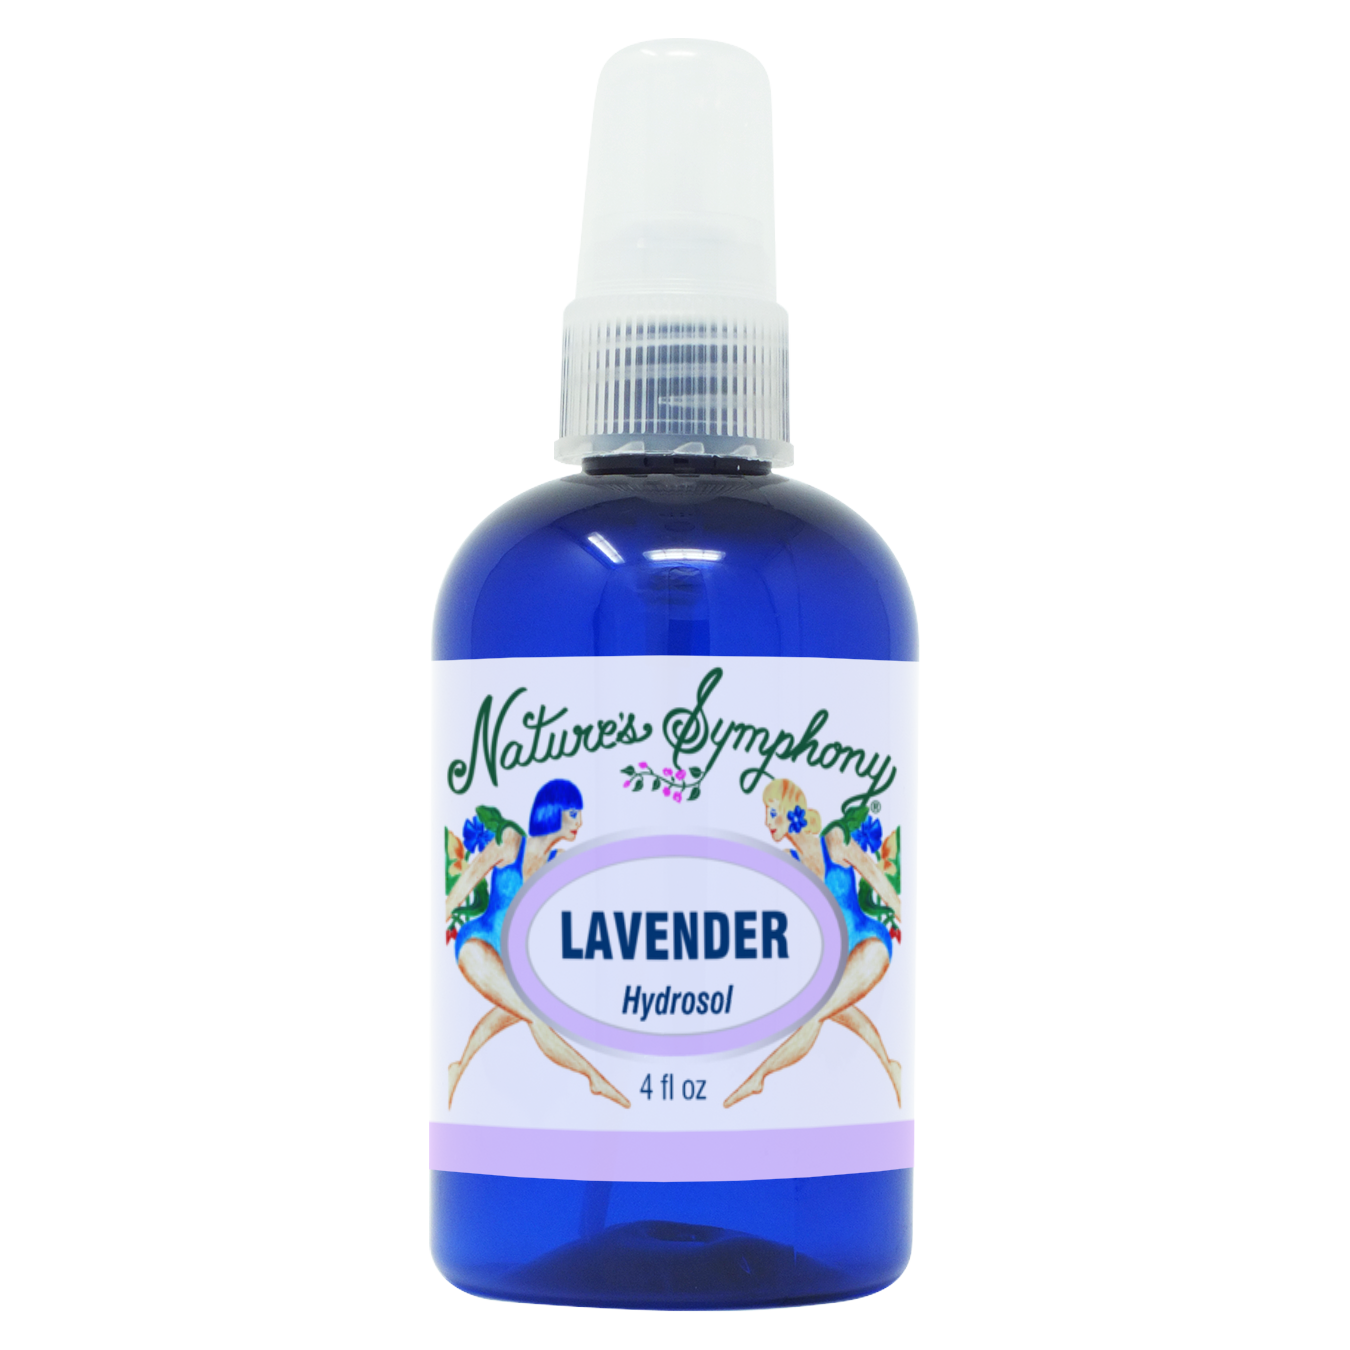 Lavender, Hydrosol - 4 fl. oz. (118ml)